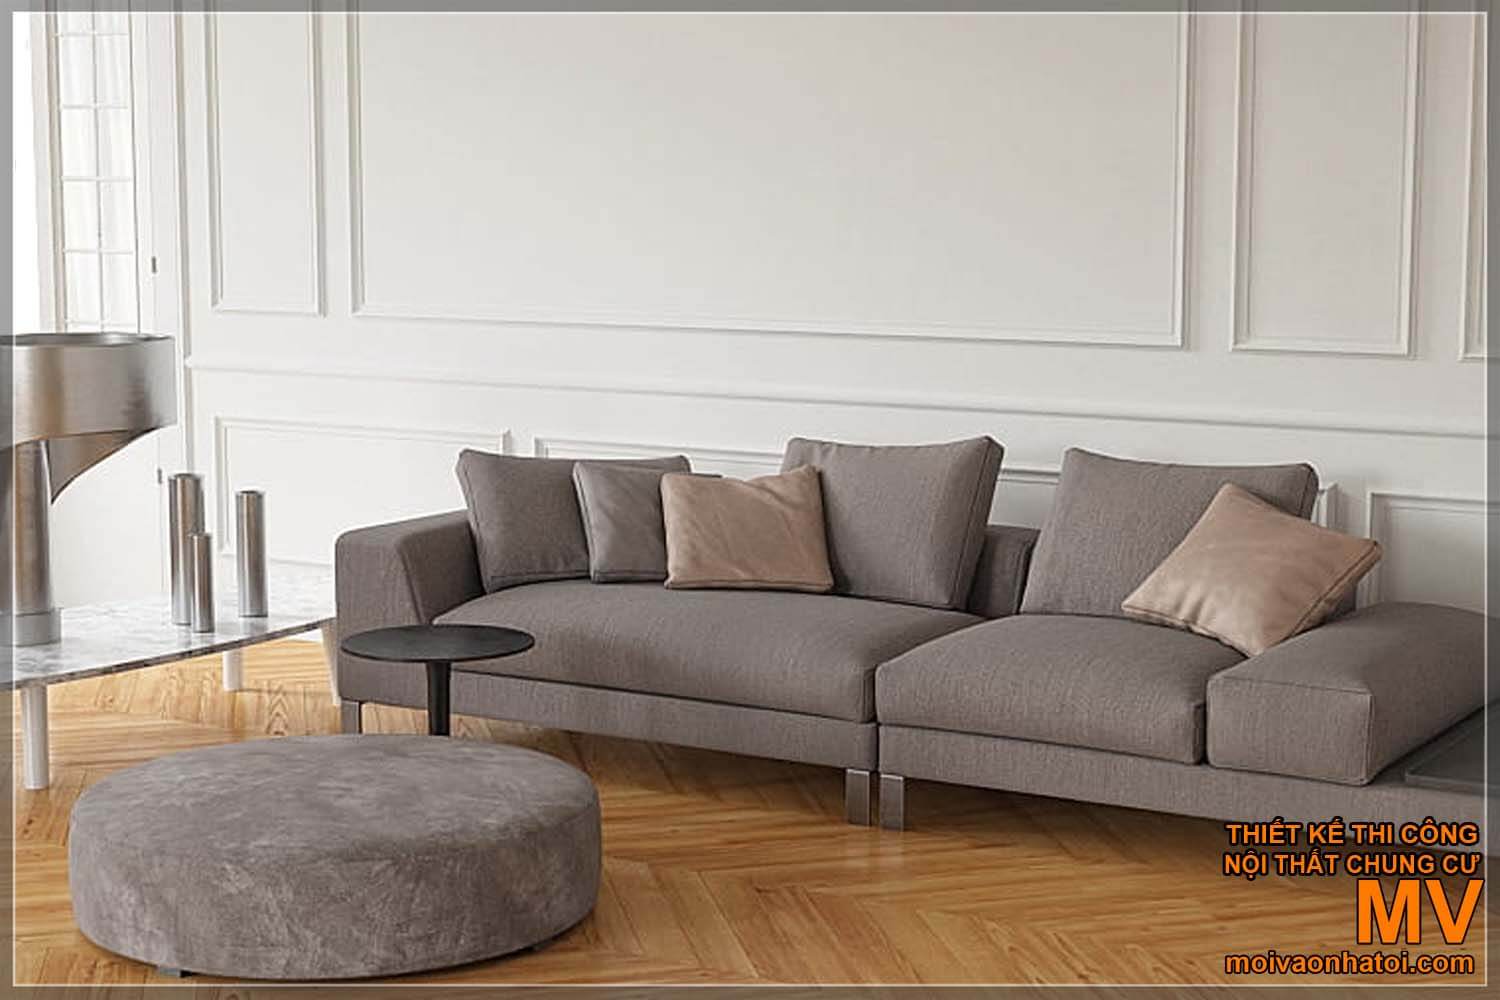 các mẫu ghế sofa hiện đại, đơn giản dành cho nhà tân cổ điển